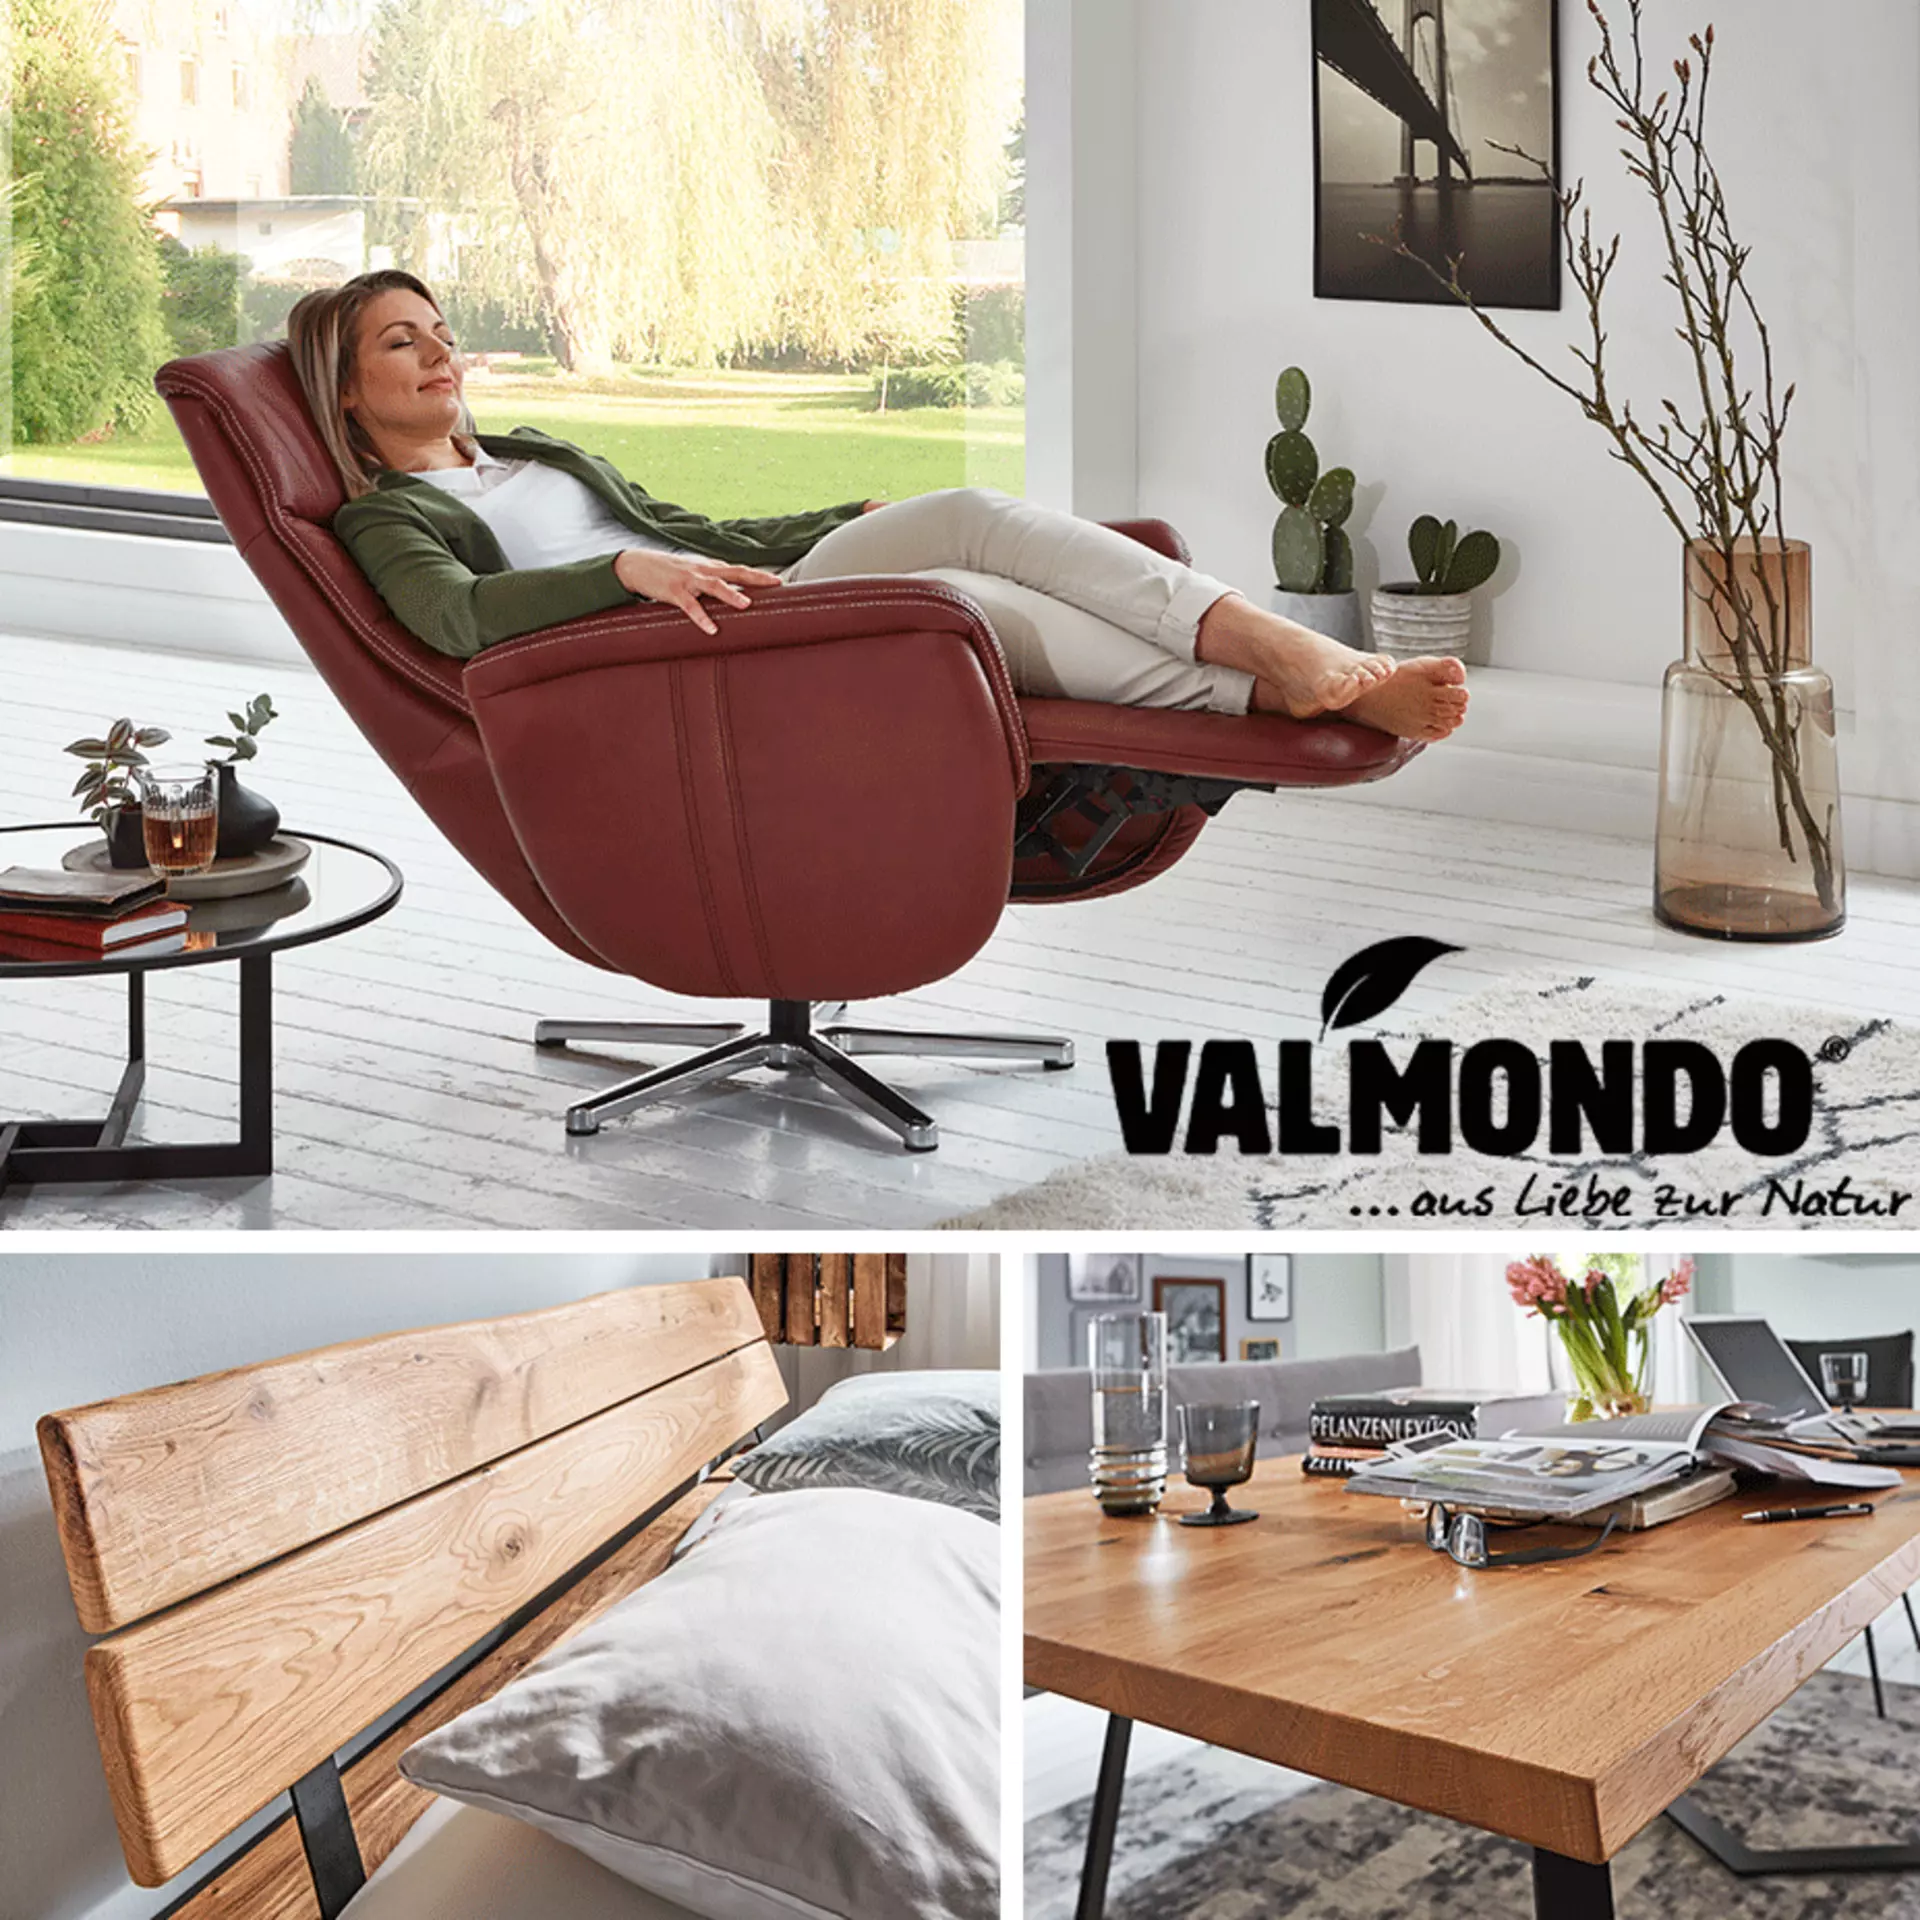 Valmondo - Premiummarke für natürliche Möbel aus Massivholz bei Möbel Inhofer